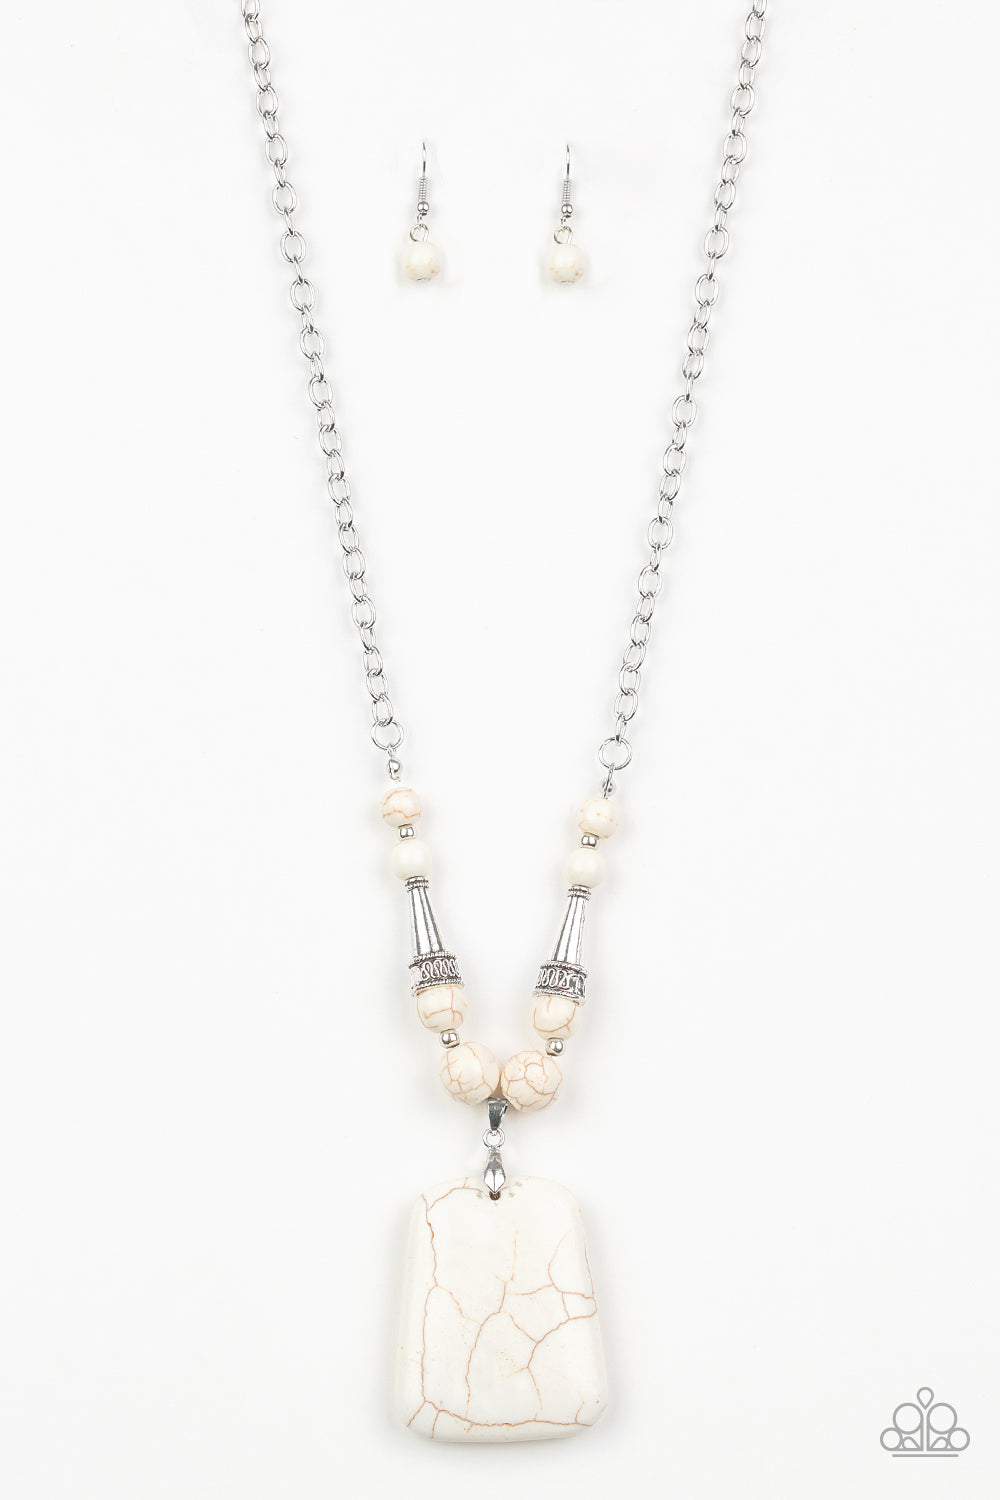 Sandstone Oasis - White (Sandstone Marble Stone) Necklace freeshipping - JewLz4u Gemstone Gallery